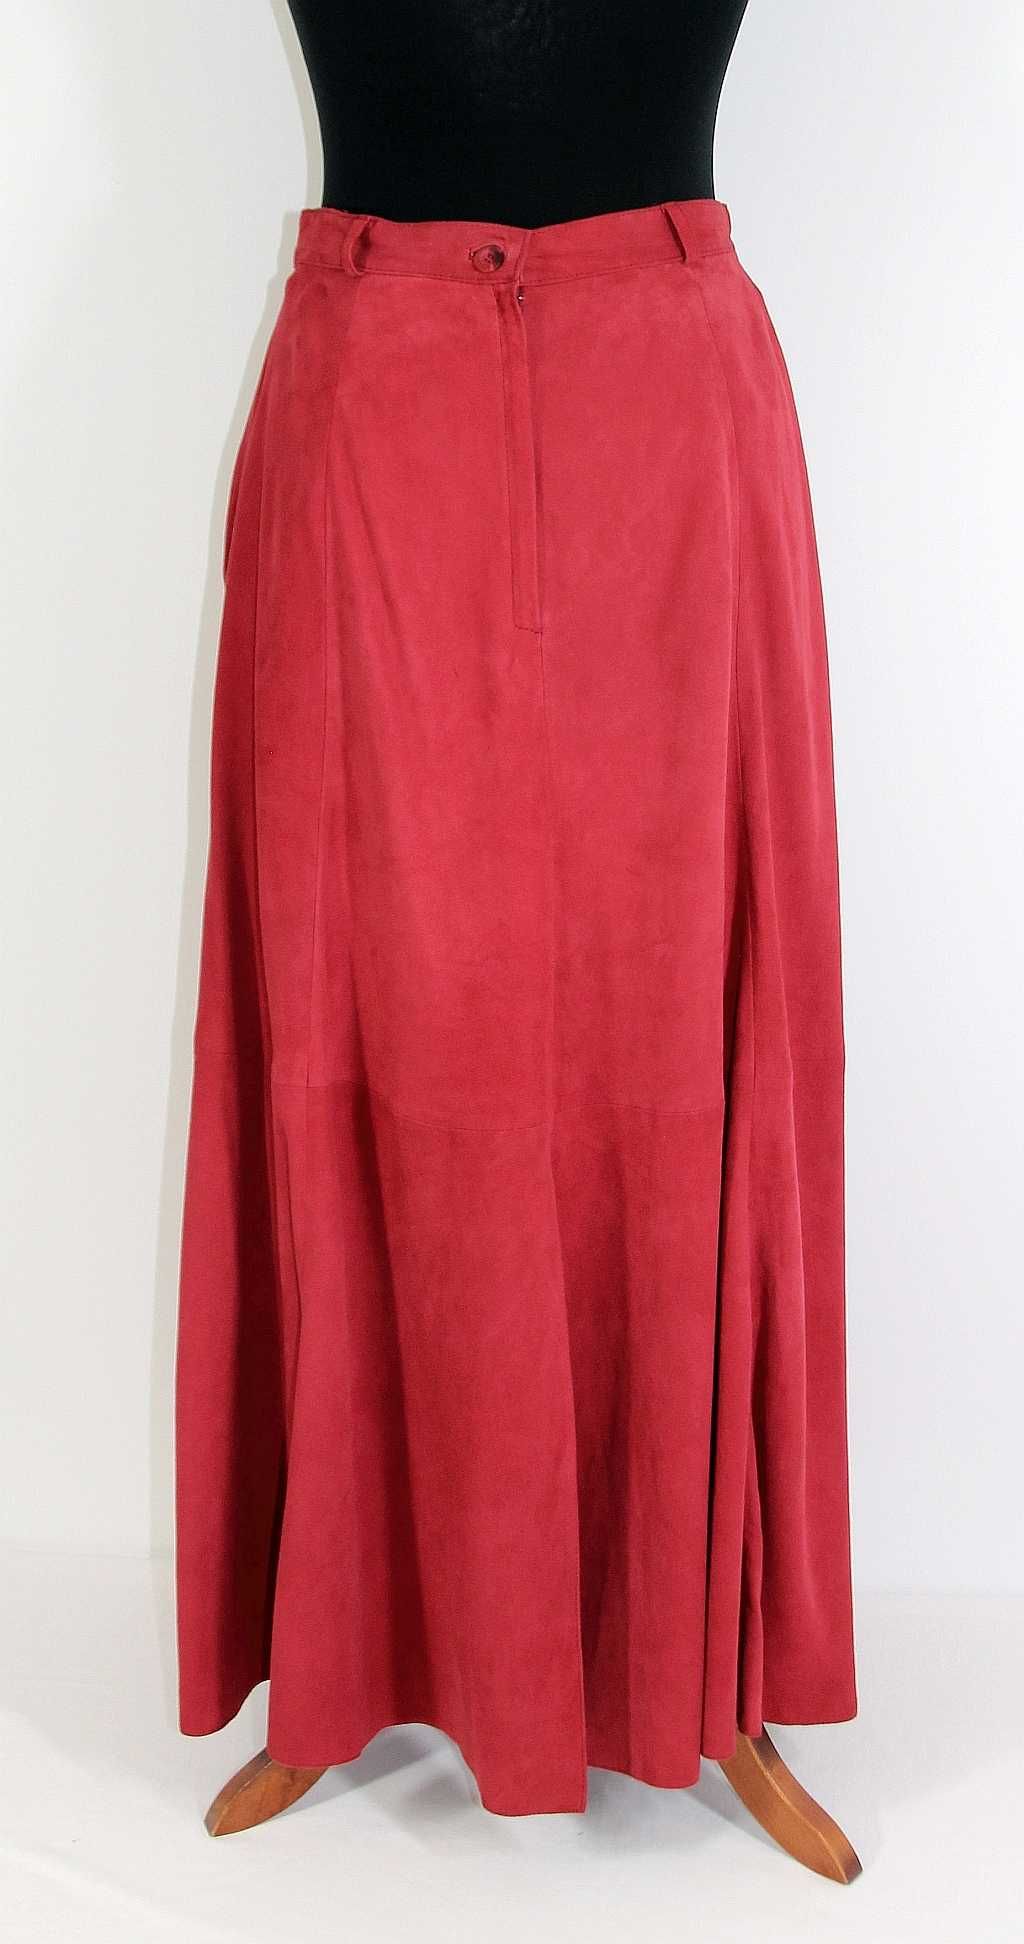 Spódnica skórzana welurowa czerwona marki Alba Moda Millano R 38